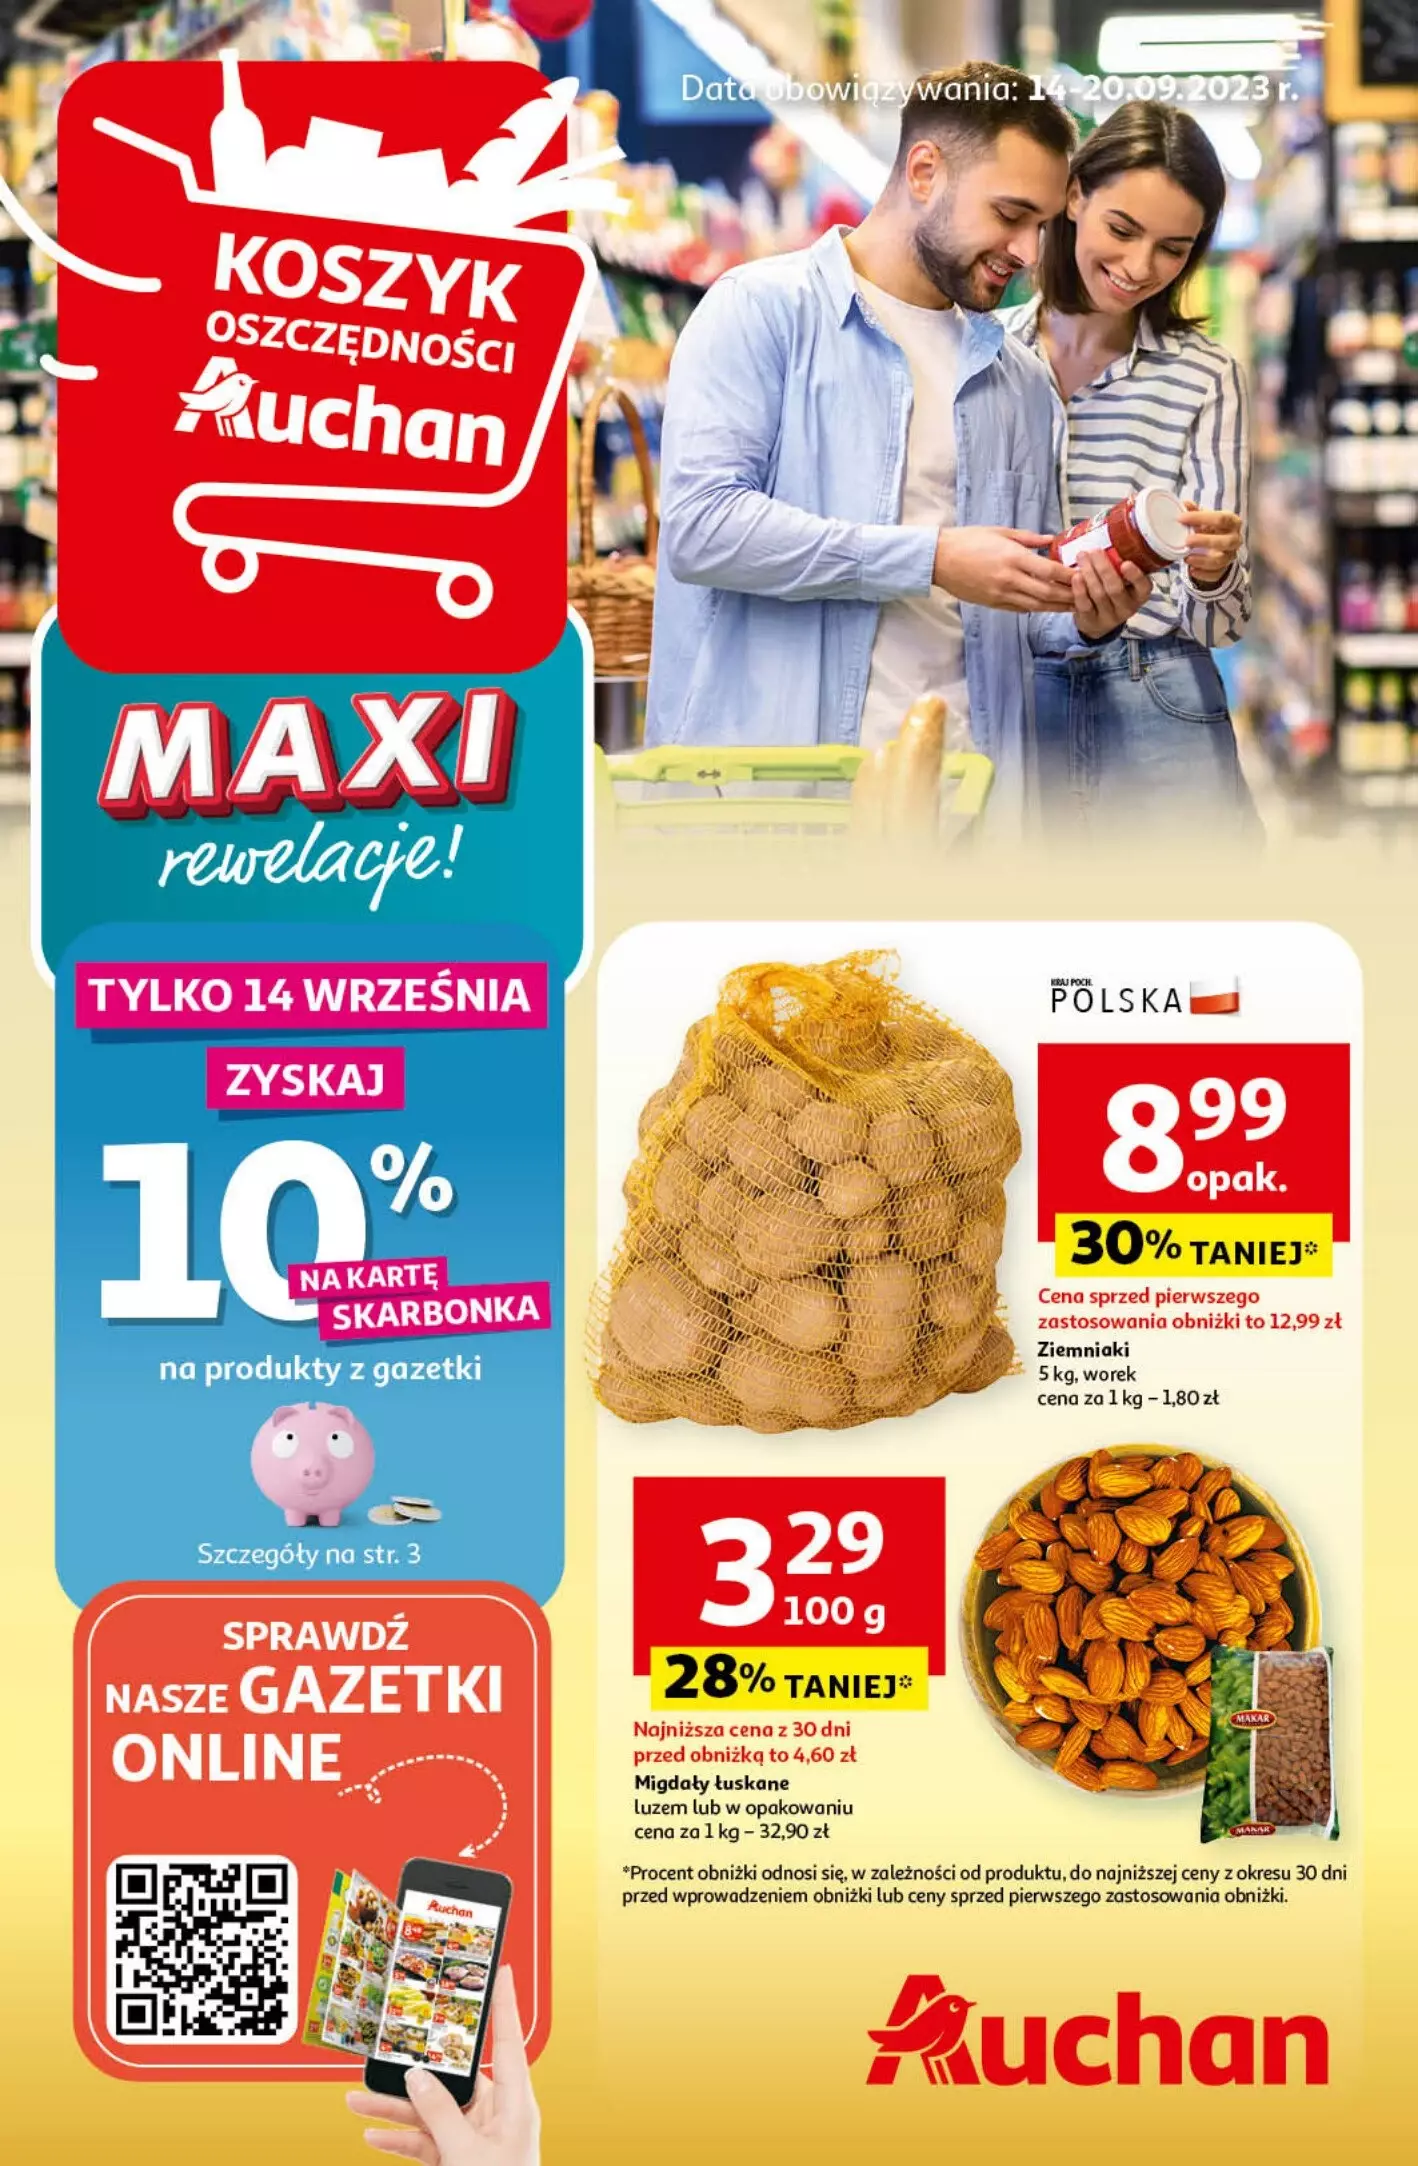 Auchan - gazetka promocyjna MAXI rewelacje! Hipermarket od czwartku 14.09 do środy 20.09